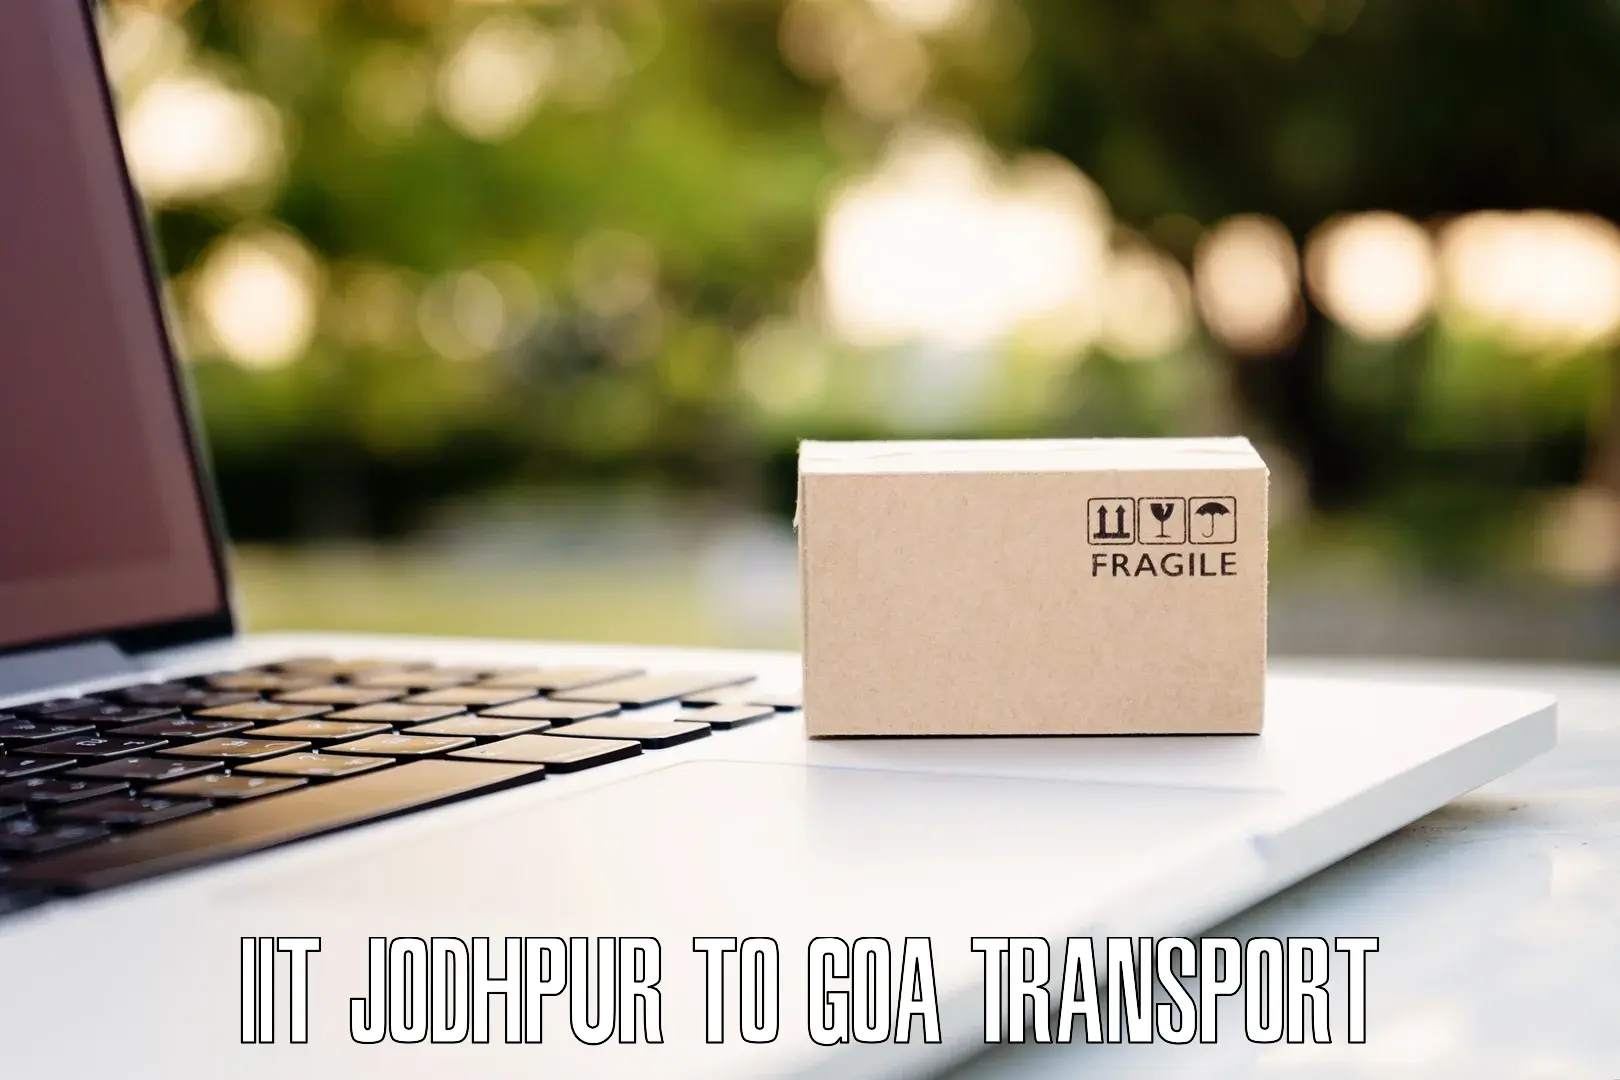 Two wheeler transport services IIT Jodhpur to Panjim